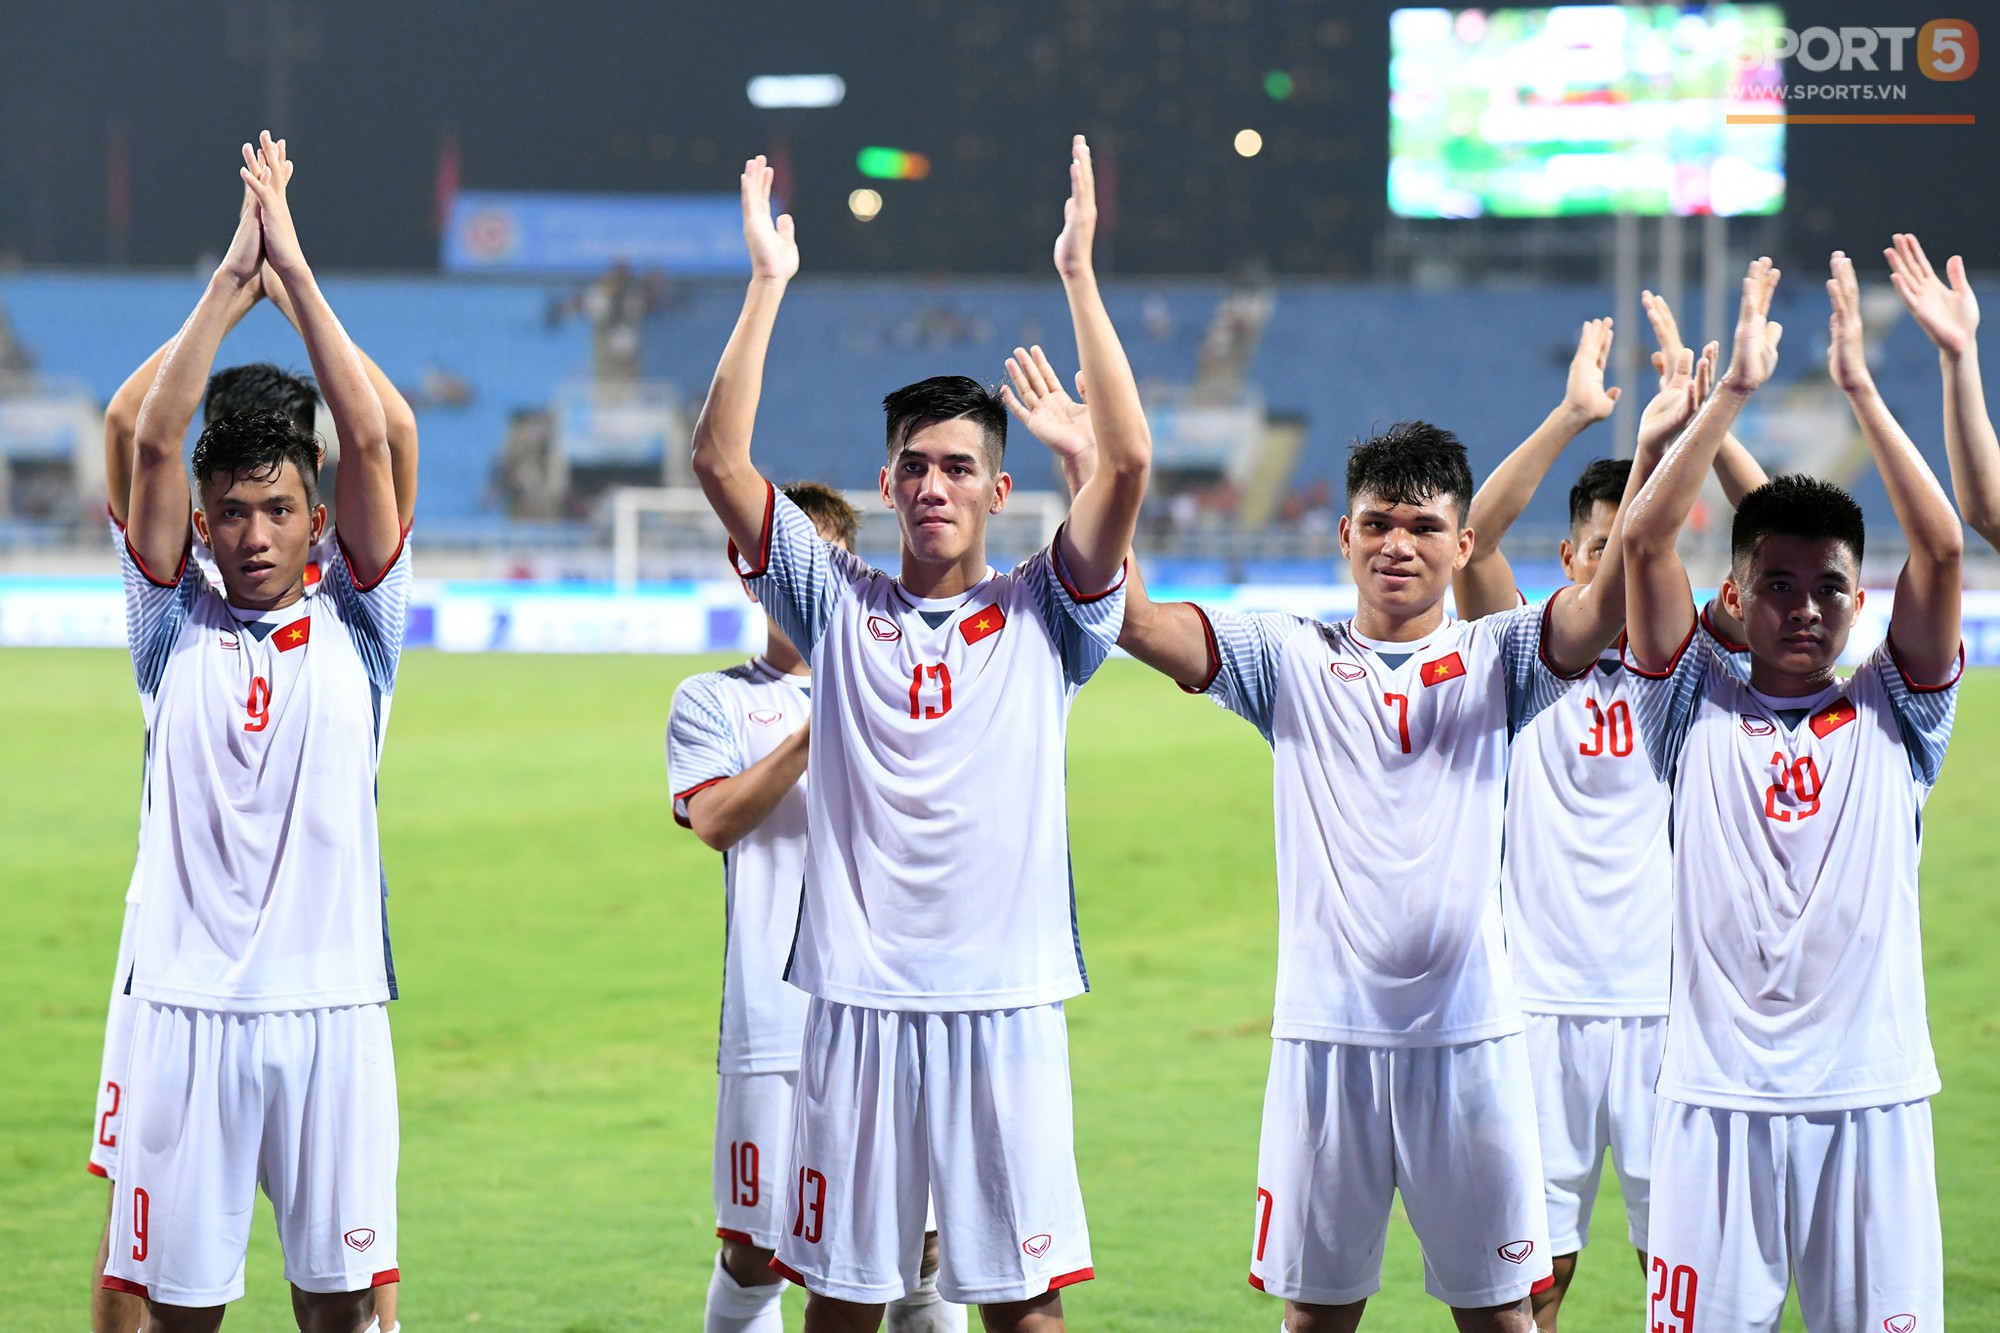 Cầu thủ U23 Việt Nam cảm ơn khán giả sau khi vô địch sớm Cup Tứ Hùng - Ảnh 2.